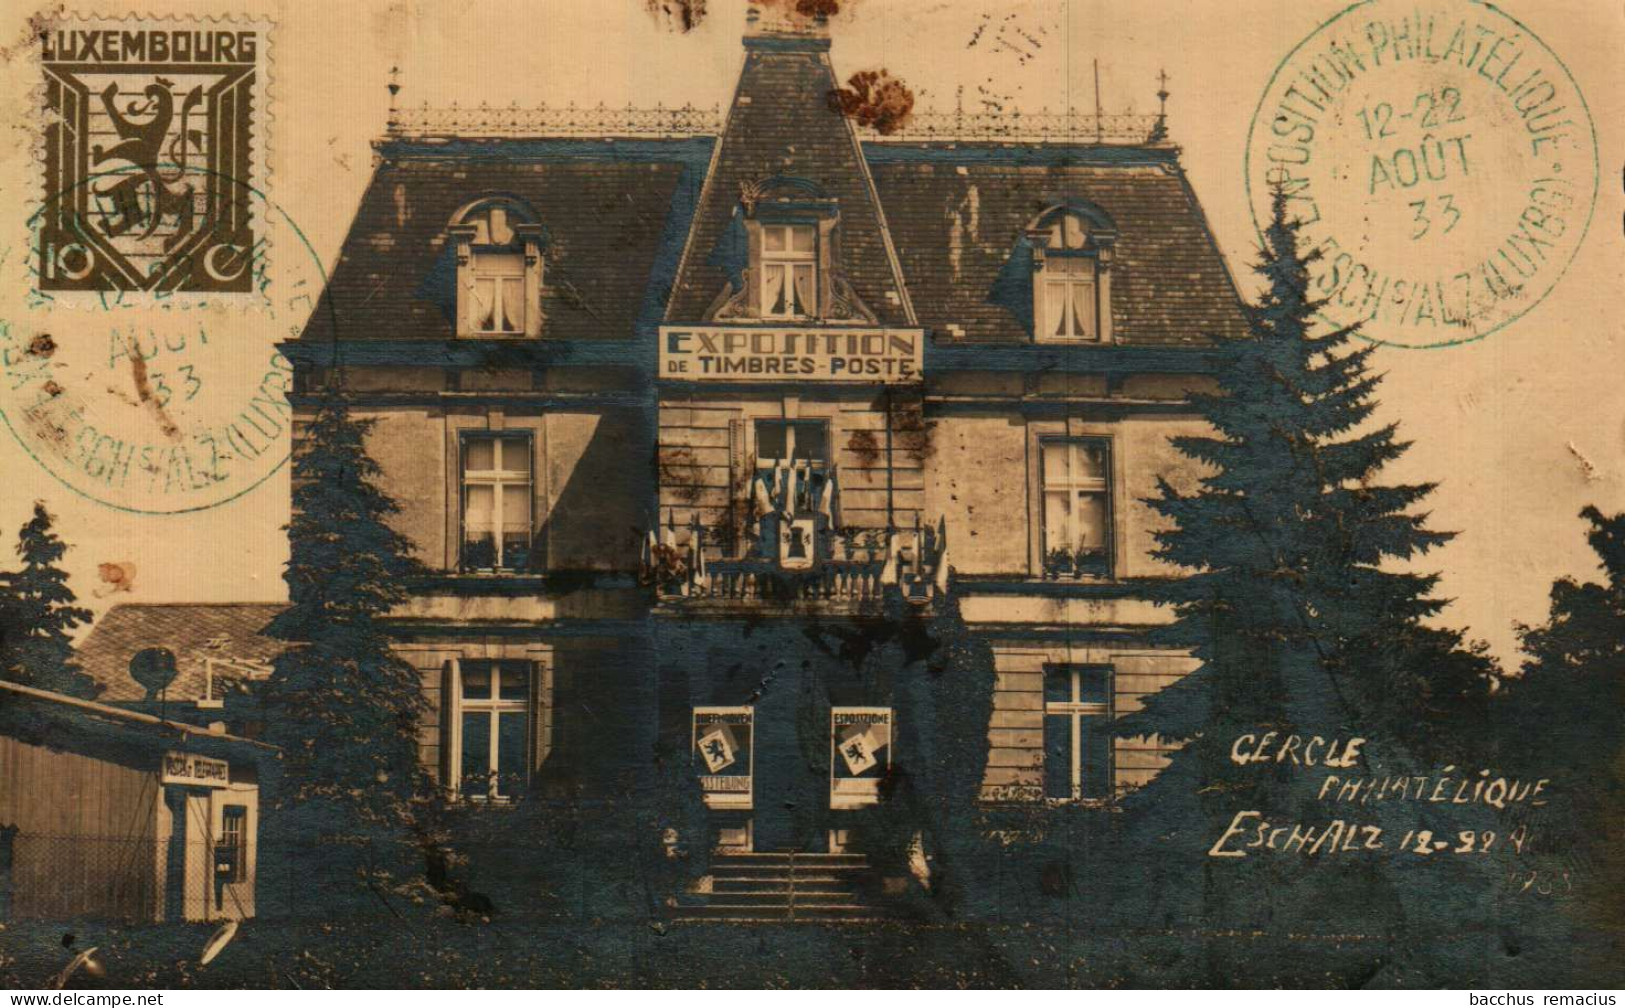 ESCH-SUR-ALZETTE   Carte-Photo Exposition De Timbres-Poste 12-22.8.1933 Du Cercle Philatélique Esch-Alzette - Esch-sur-Alzette